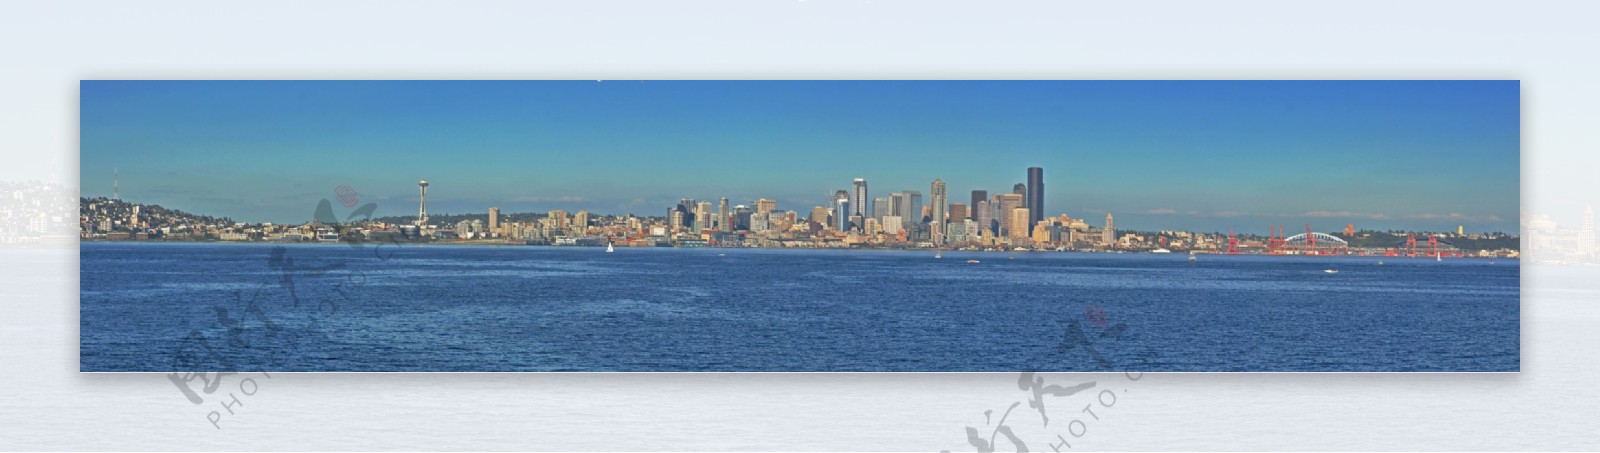 西雅图渡船全景图片